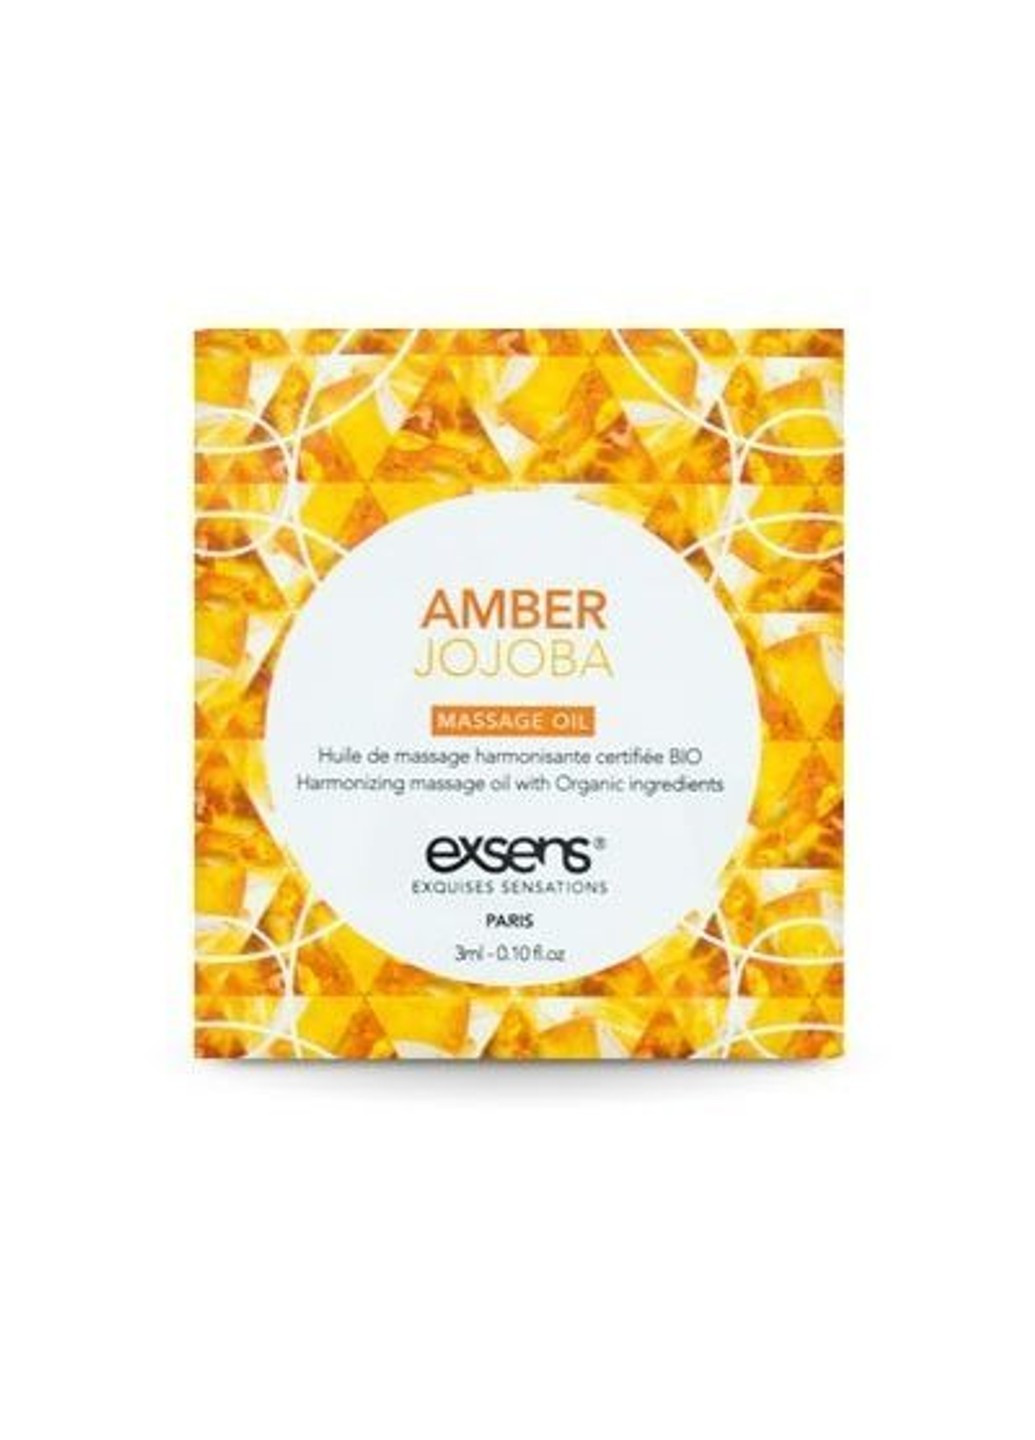 Пробник массажного масла Amber Jojoba 3мл Exsens (252607130)